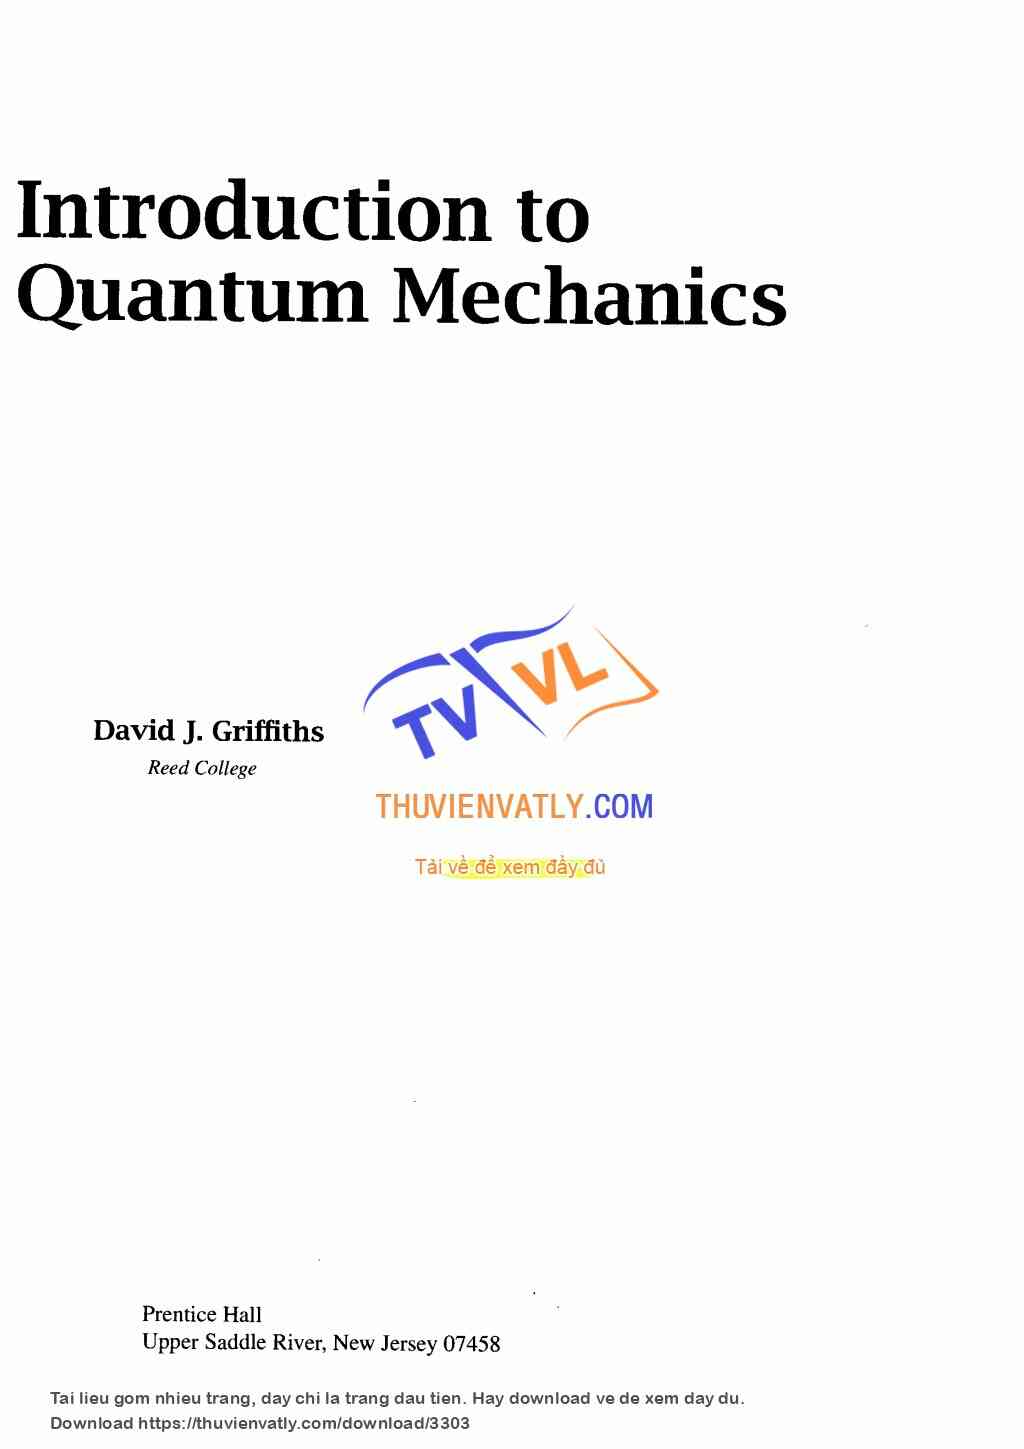 Introduction to Quantum Mechanics - David J. Griffiths